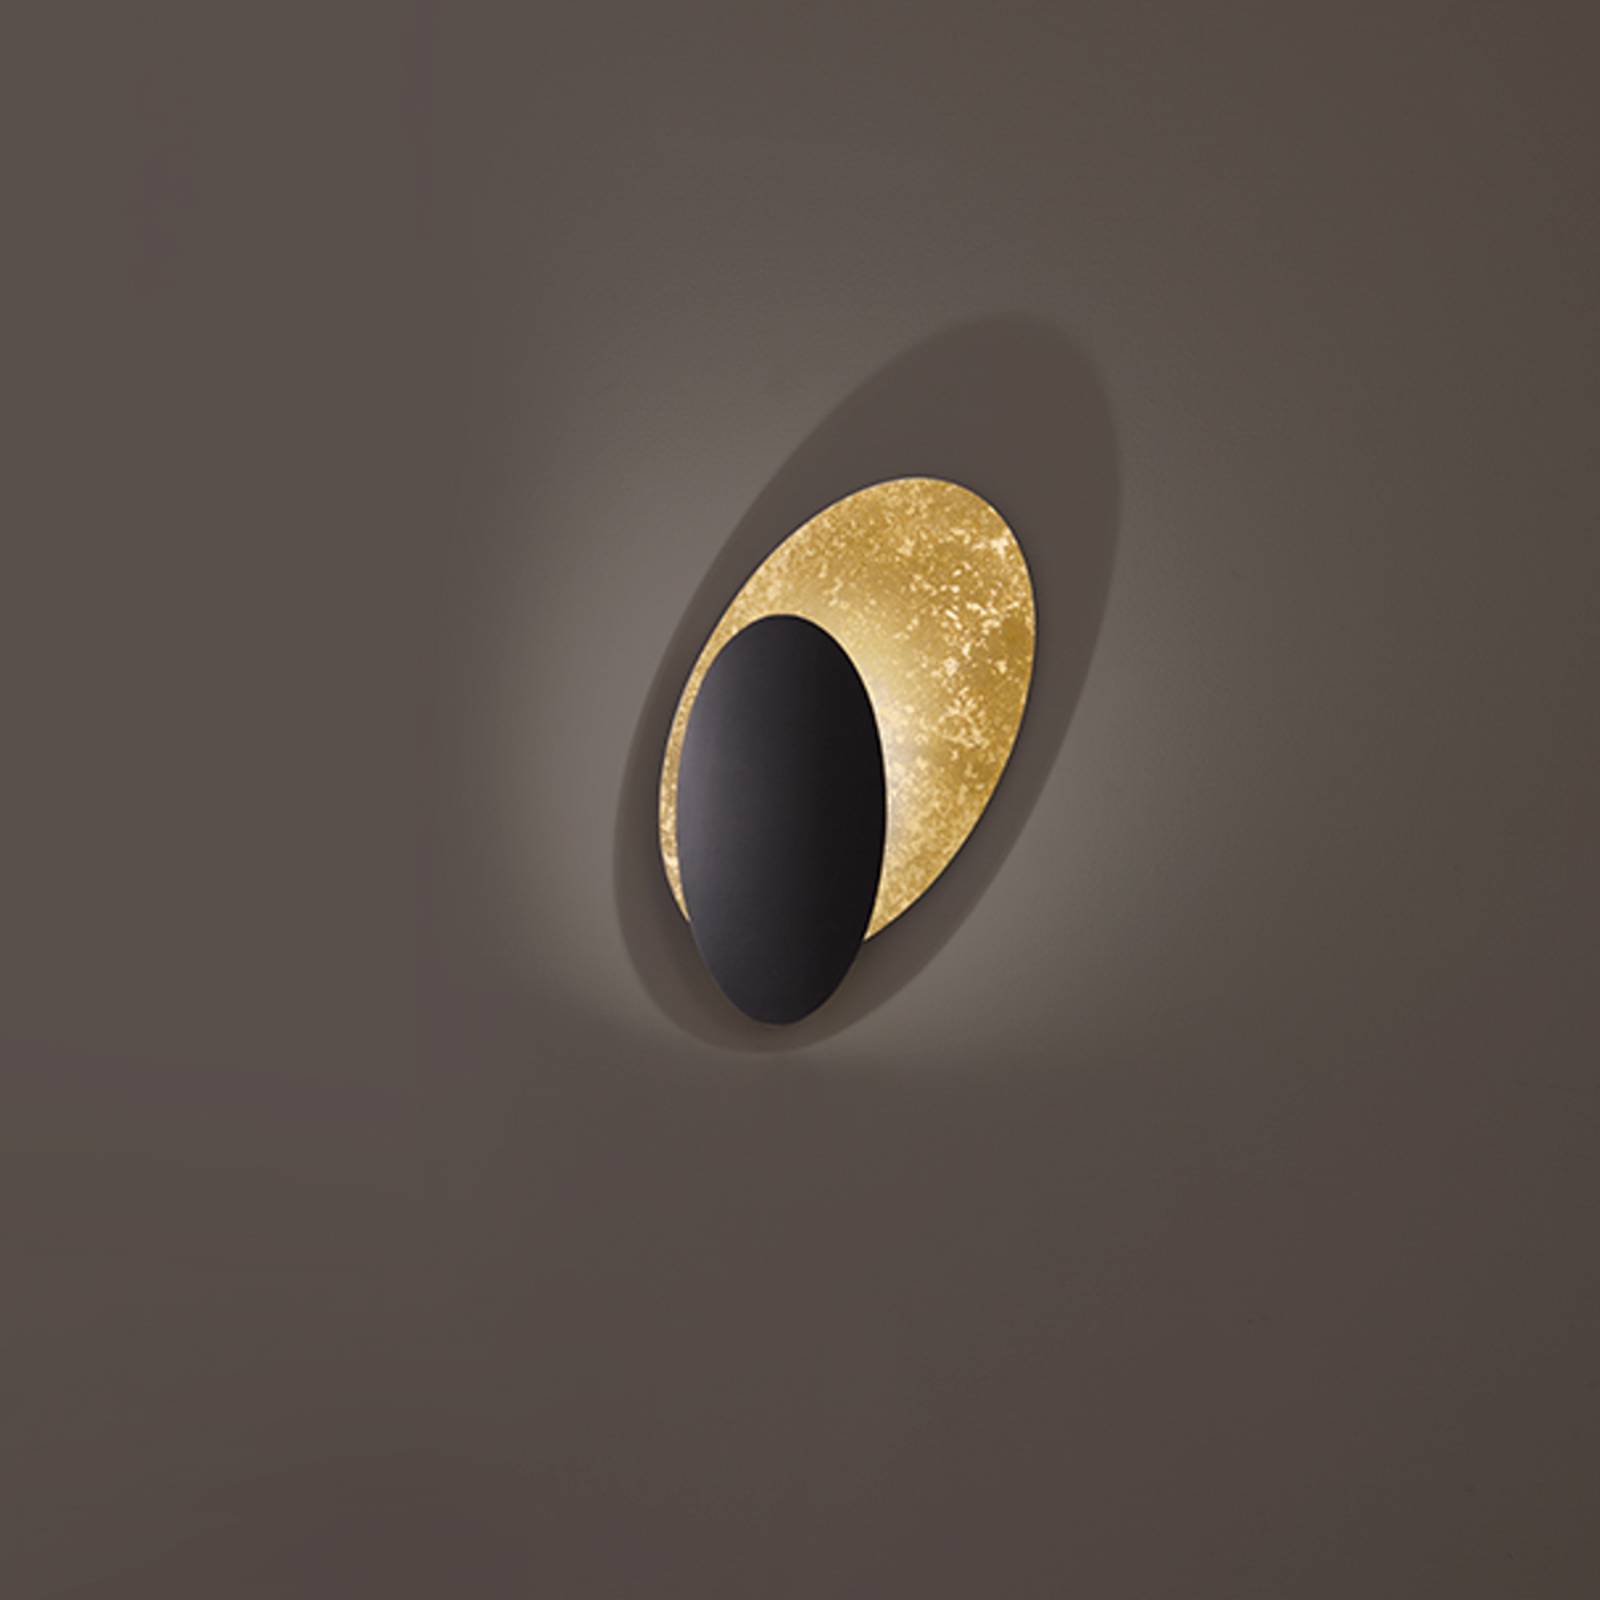 ICONE Masai nástenné svietidlo 927 Triac 50x28 zlatá/čierna